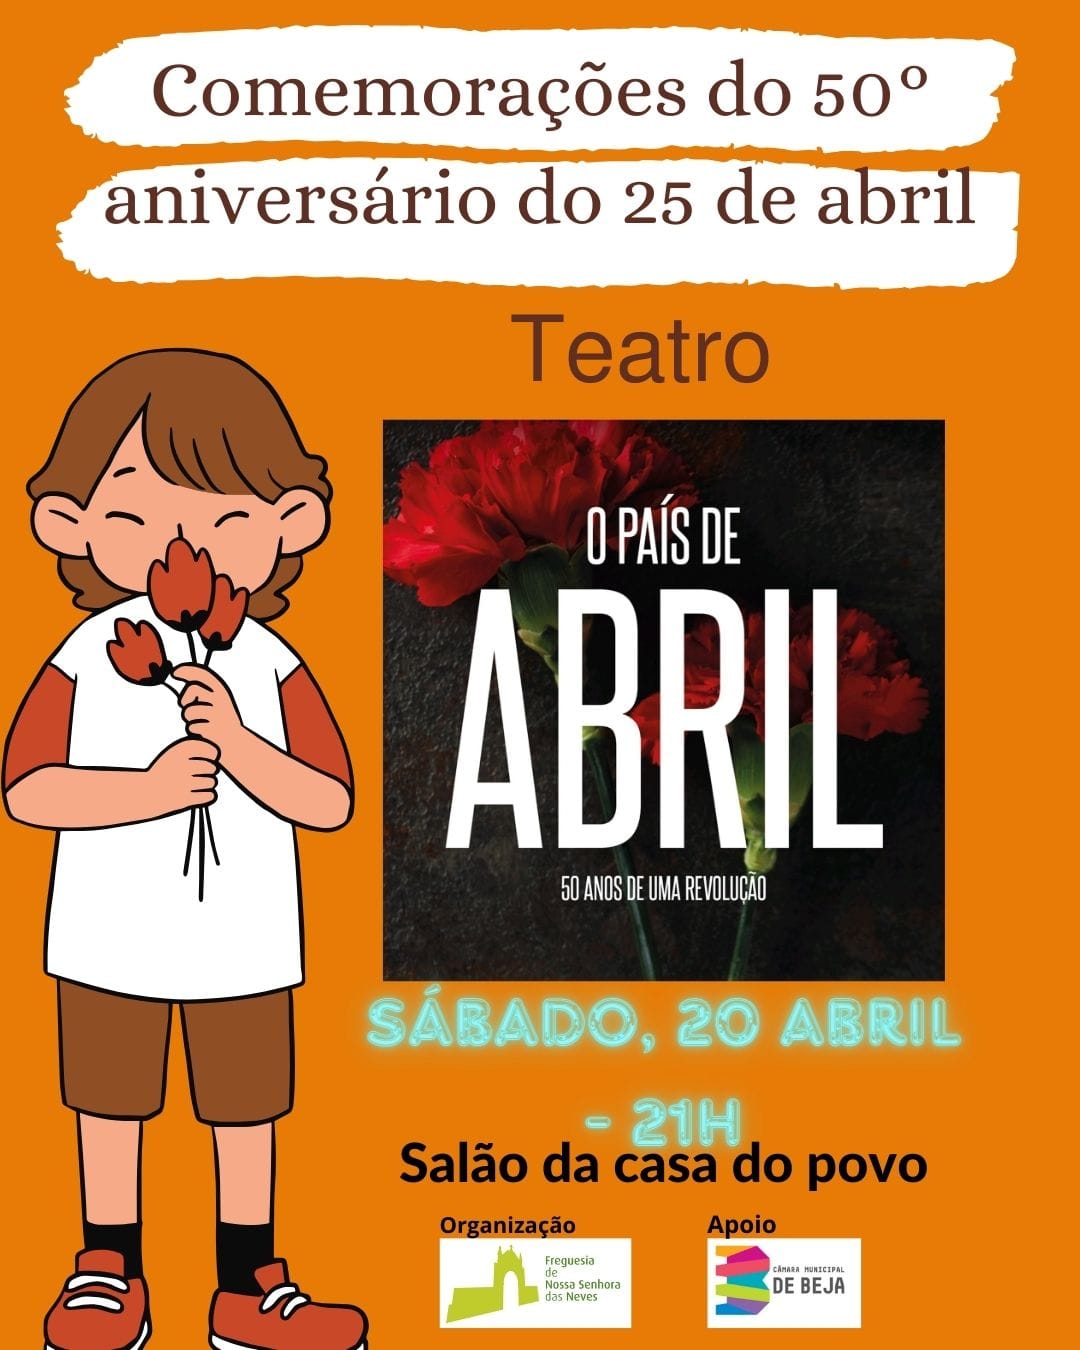 Teatro - O País de Abril 50 Anos de Uma Revolução